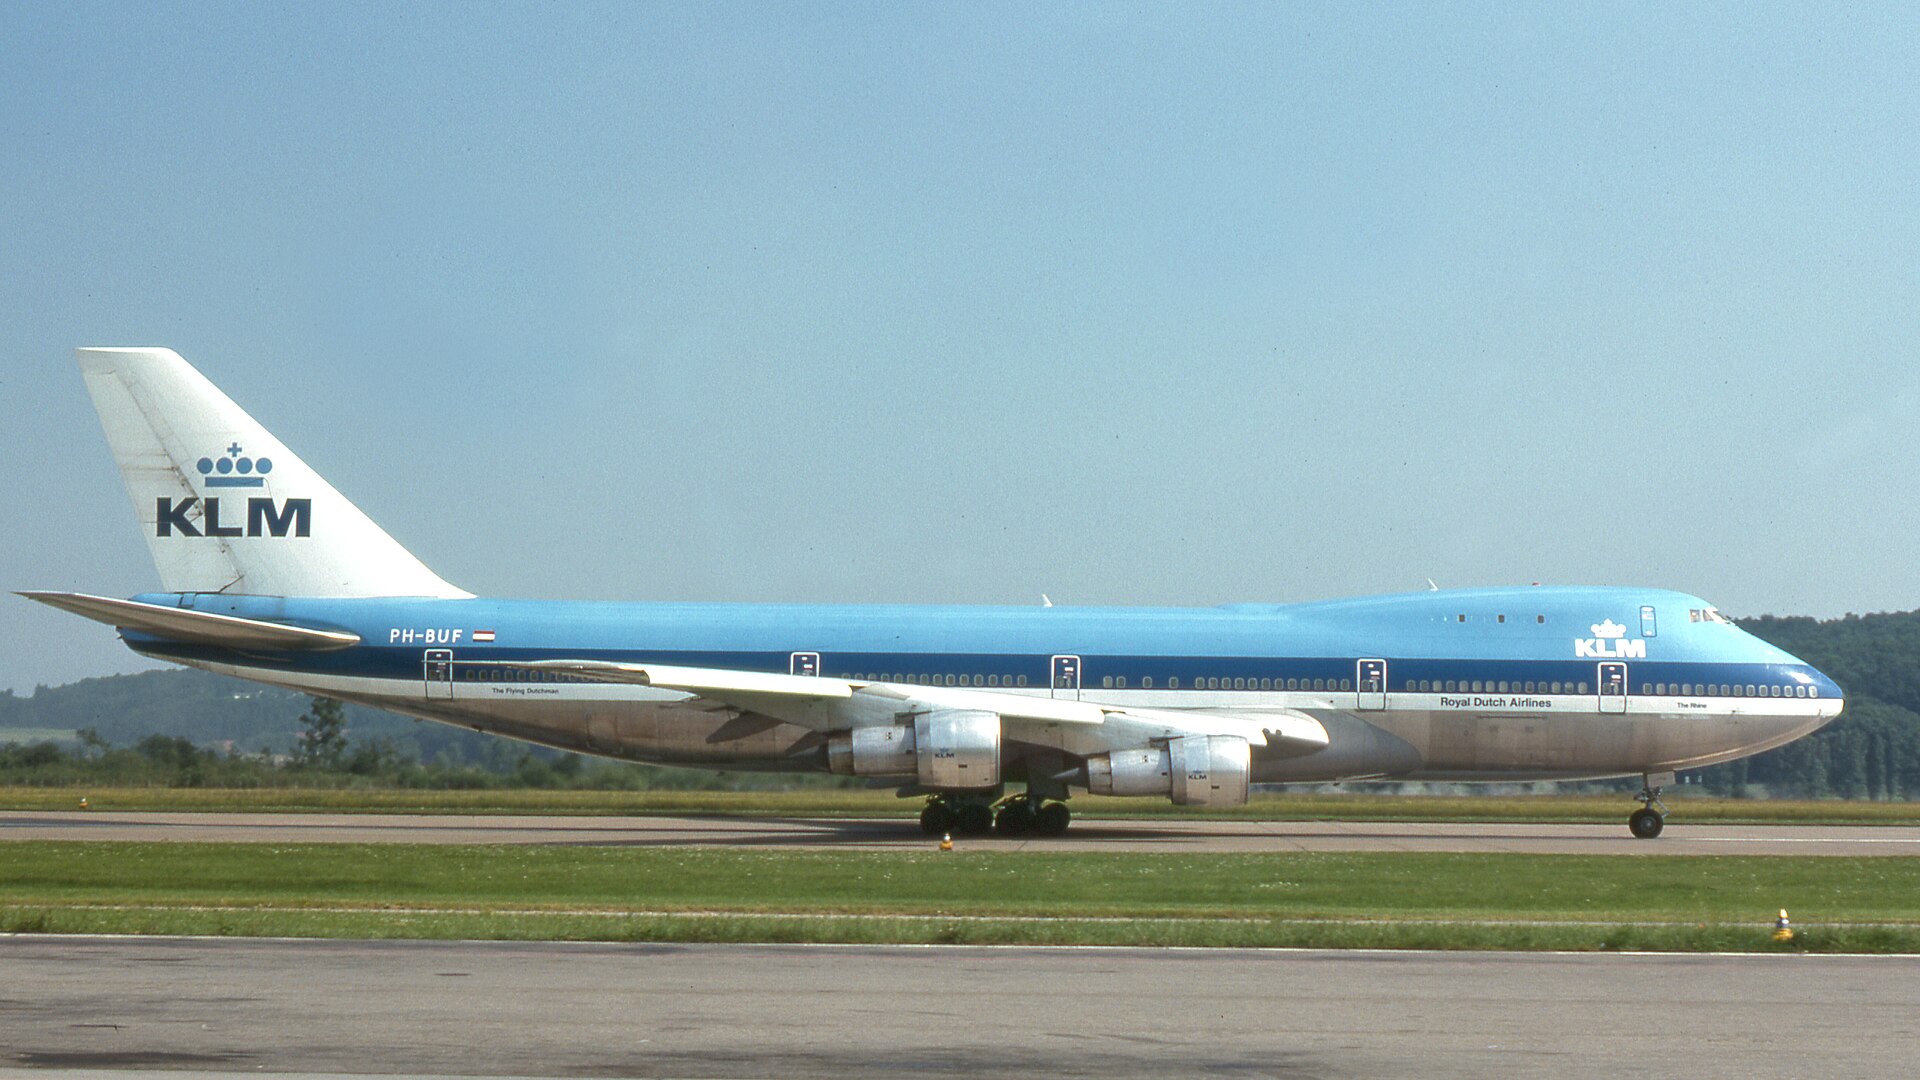 هواپیمای بوئینگ ۷۴۷–۲۰۶ بی KLM به شمارهٔ PH-BUF درگیر در حادثه